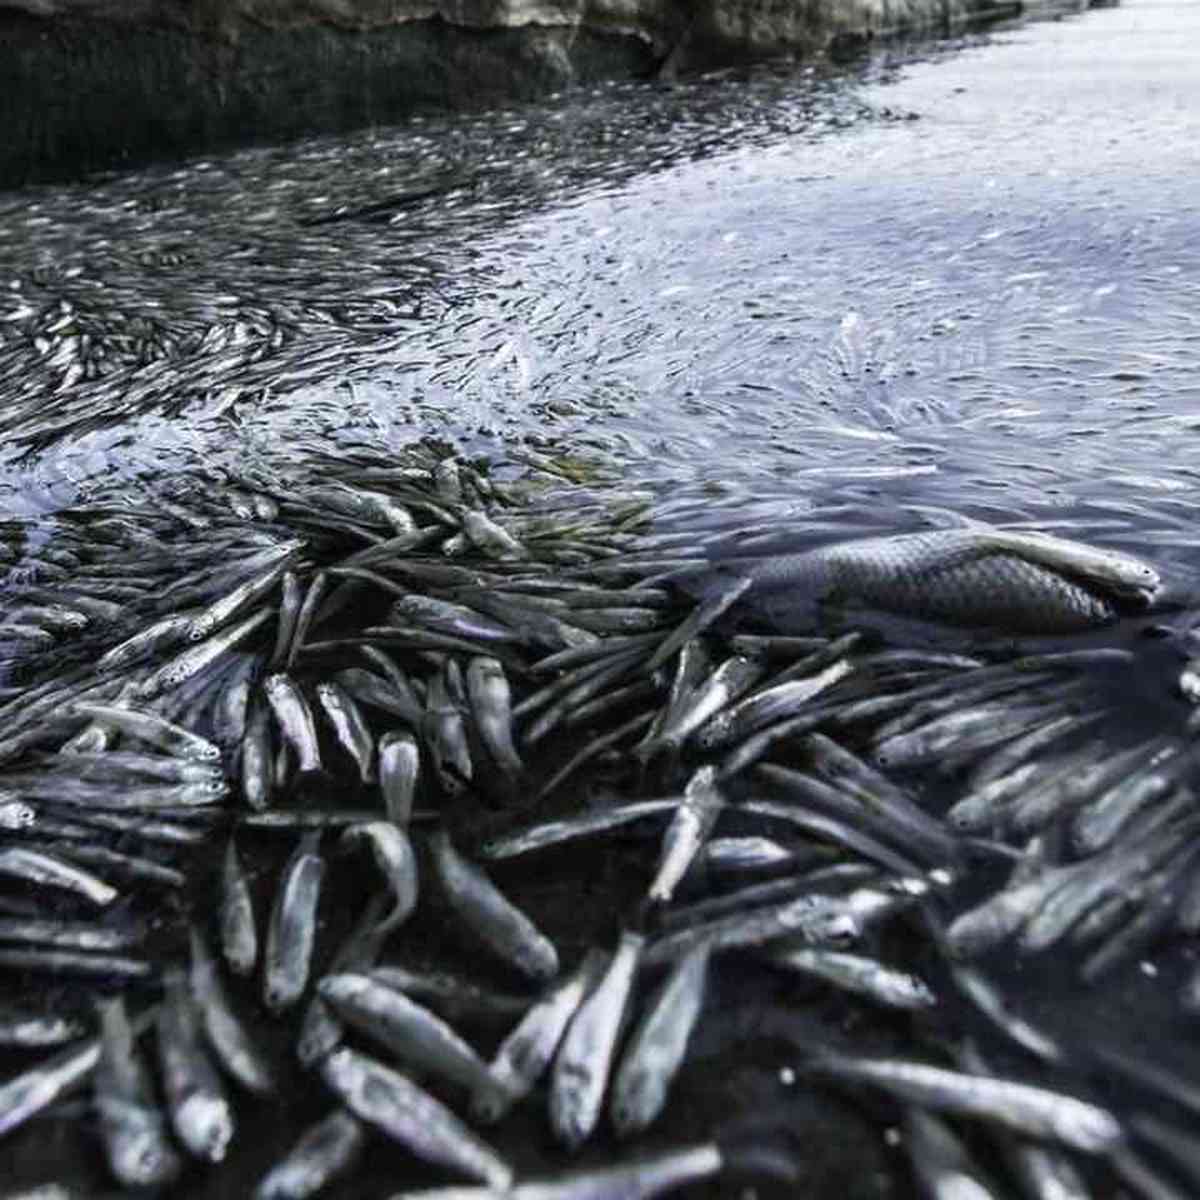 Lagoa amanhece tomada por peixes mortos em Linhares. É a Semana da Água